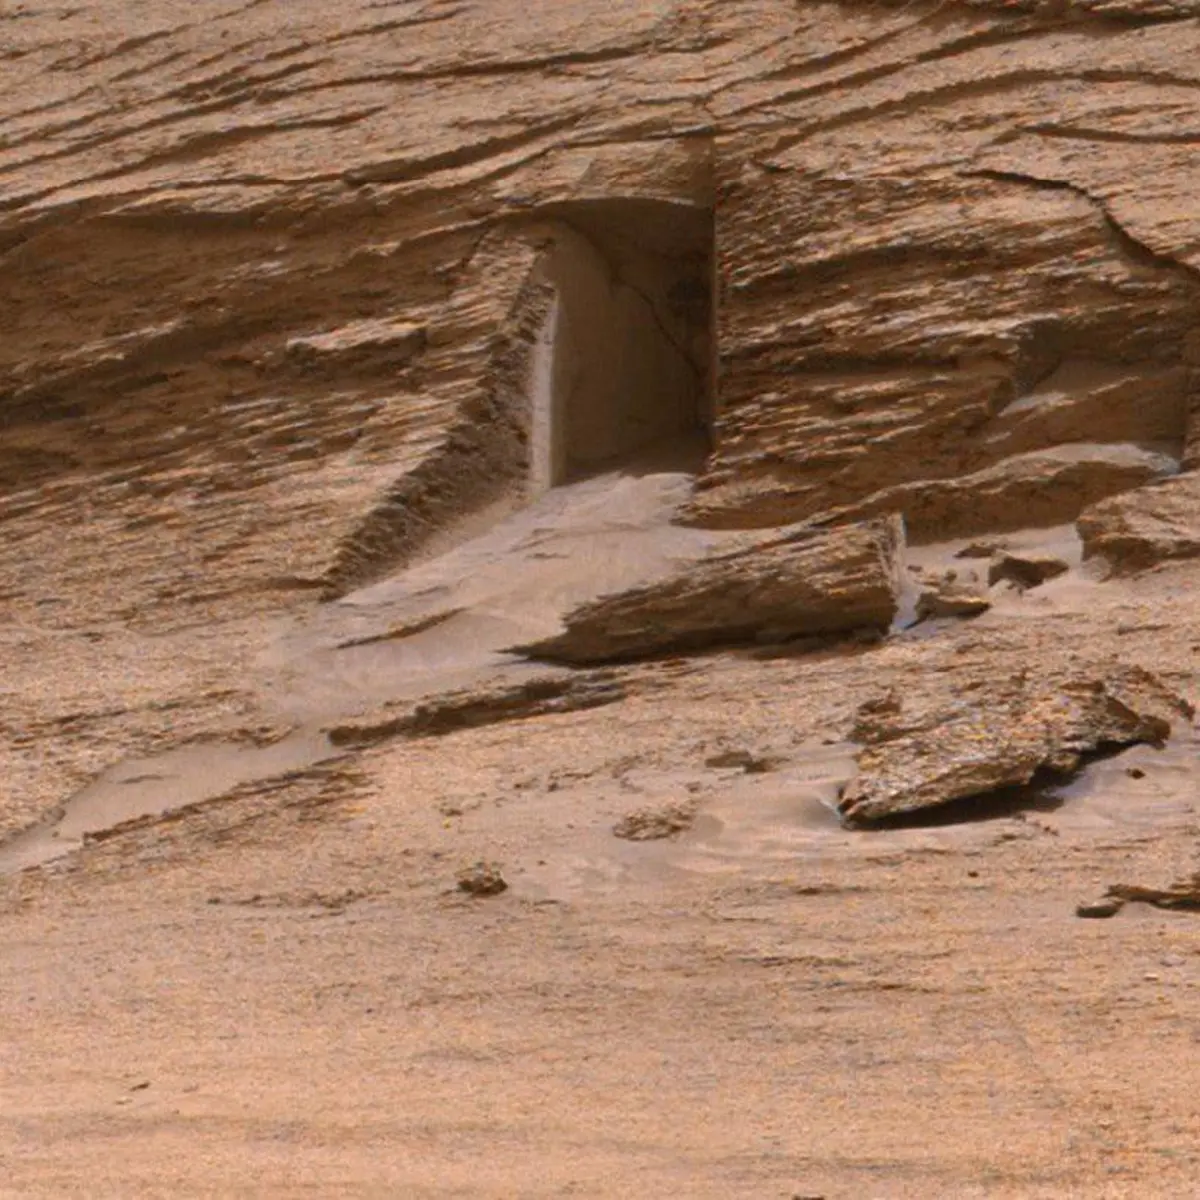 La viral imagen de una 'puerta' en Marte captada por la NASA que desata todo tipo de teorías en las redes